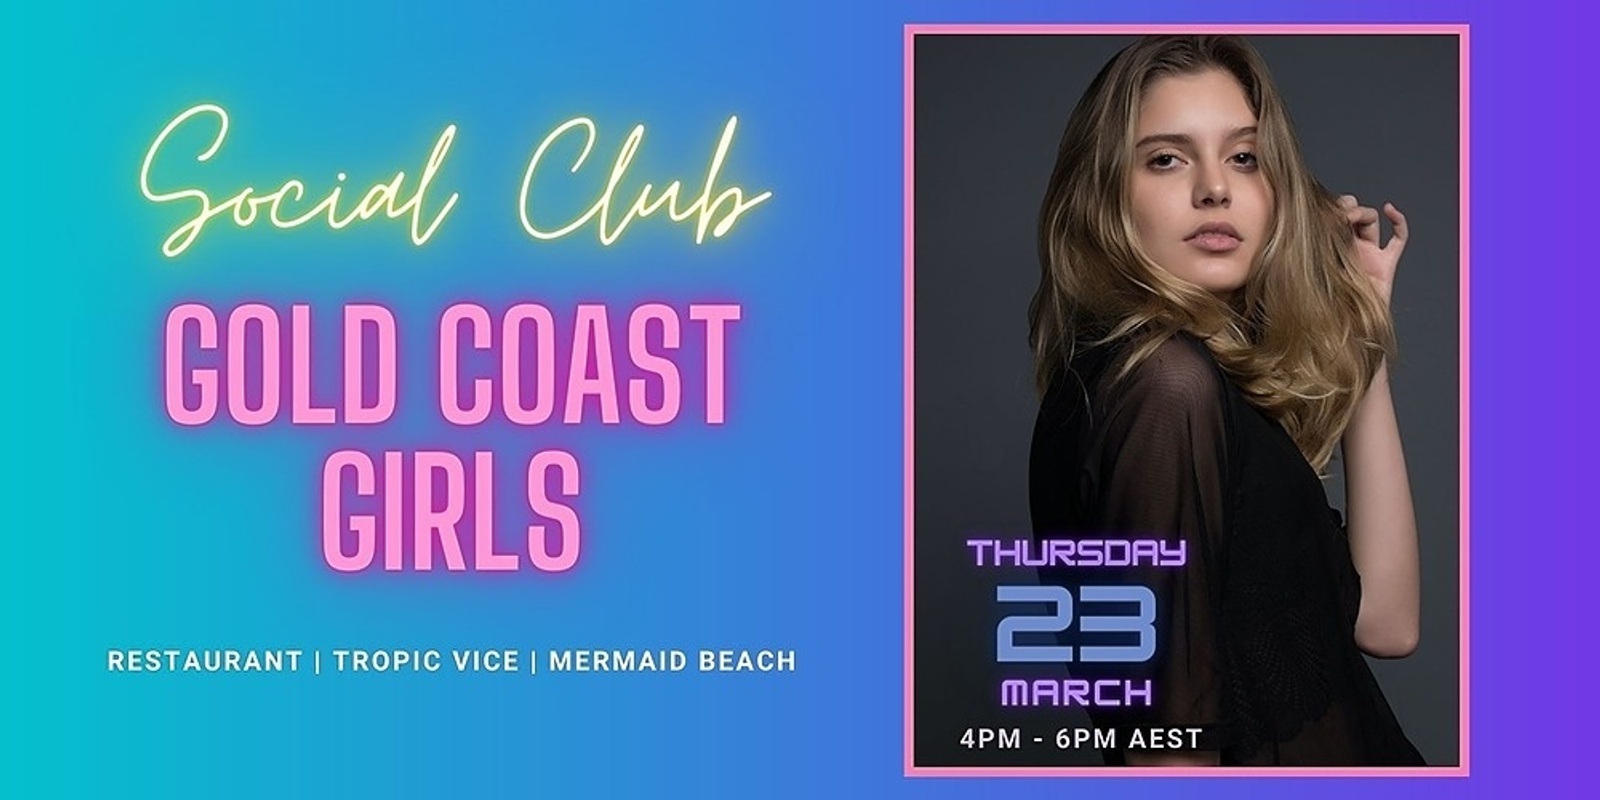 Social Club - Gold Coast Girls